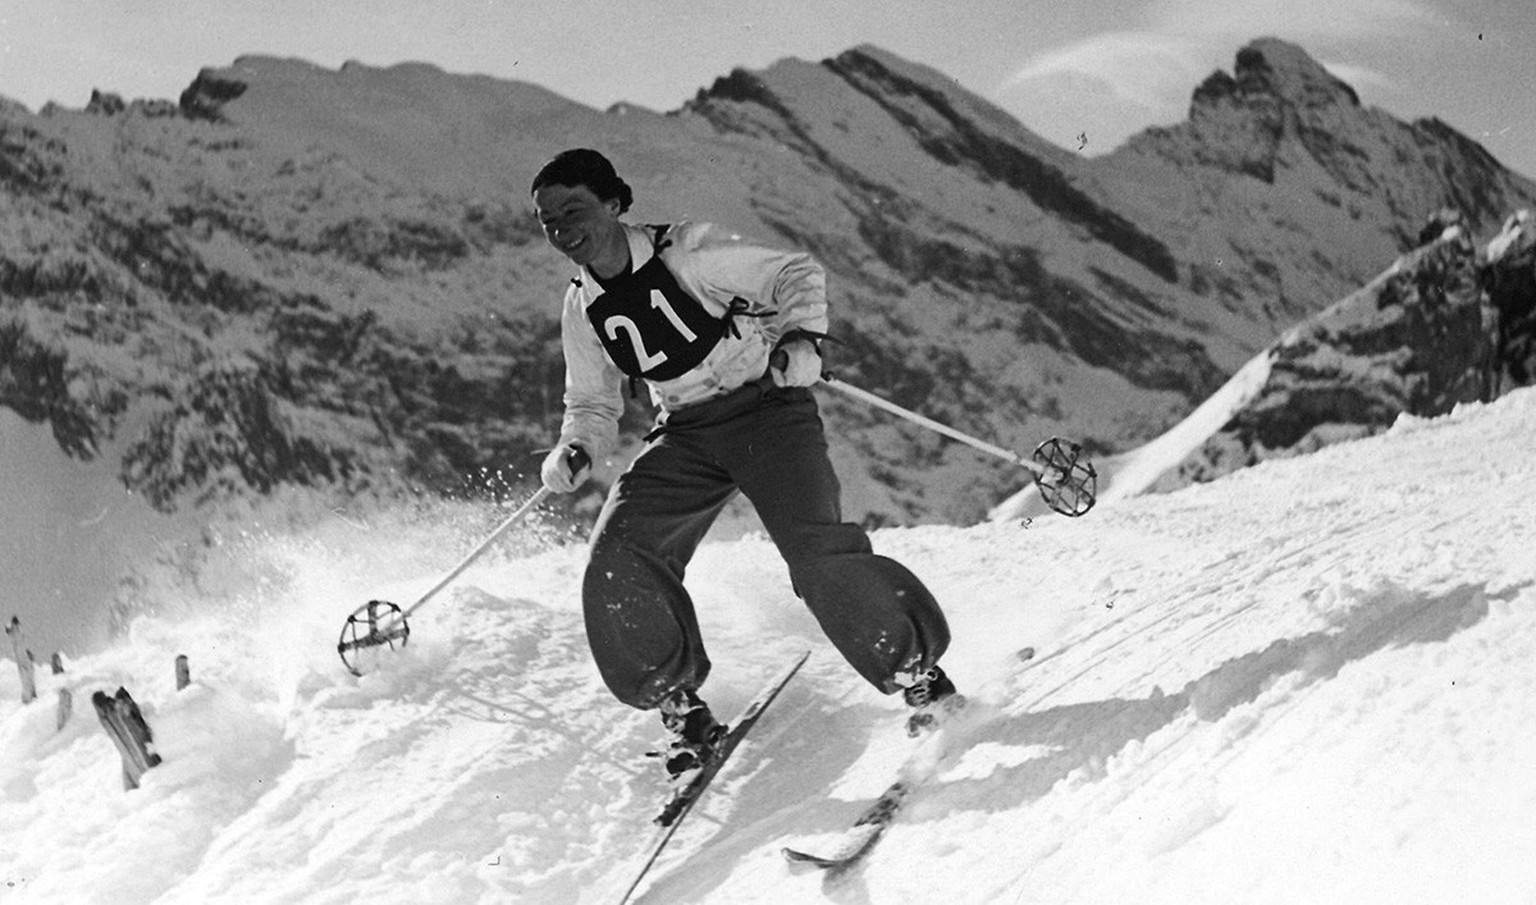 Schnappschuss eines unbekannten Fotografen: Rösli Streiff 1934 am «No Fall Race» in Mürren.
https://www.freulerpalast.ch/ausstellungen_und_events/staendige_ausstellung/skisportmuseum/